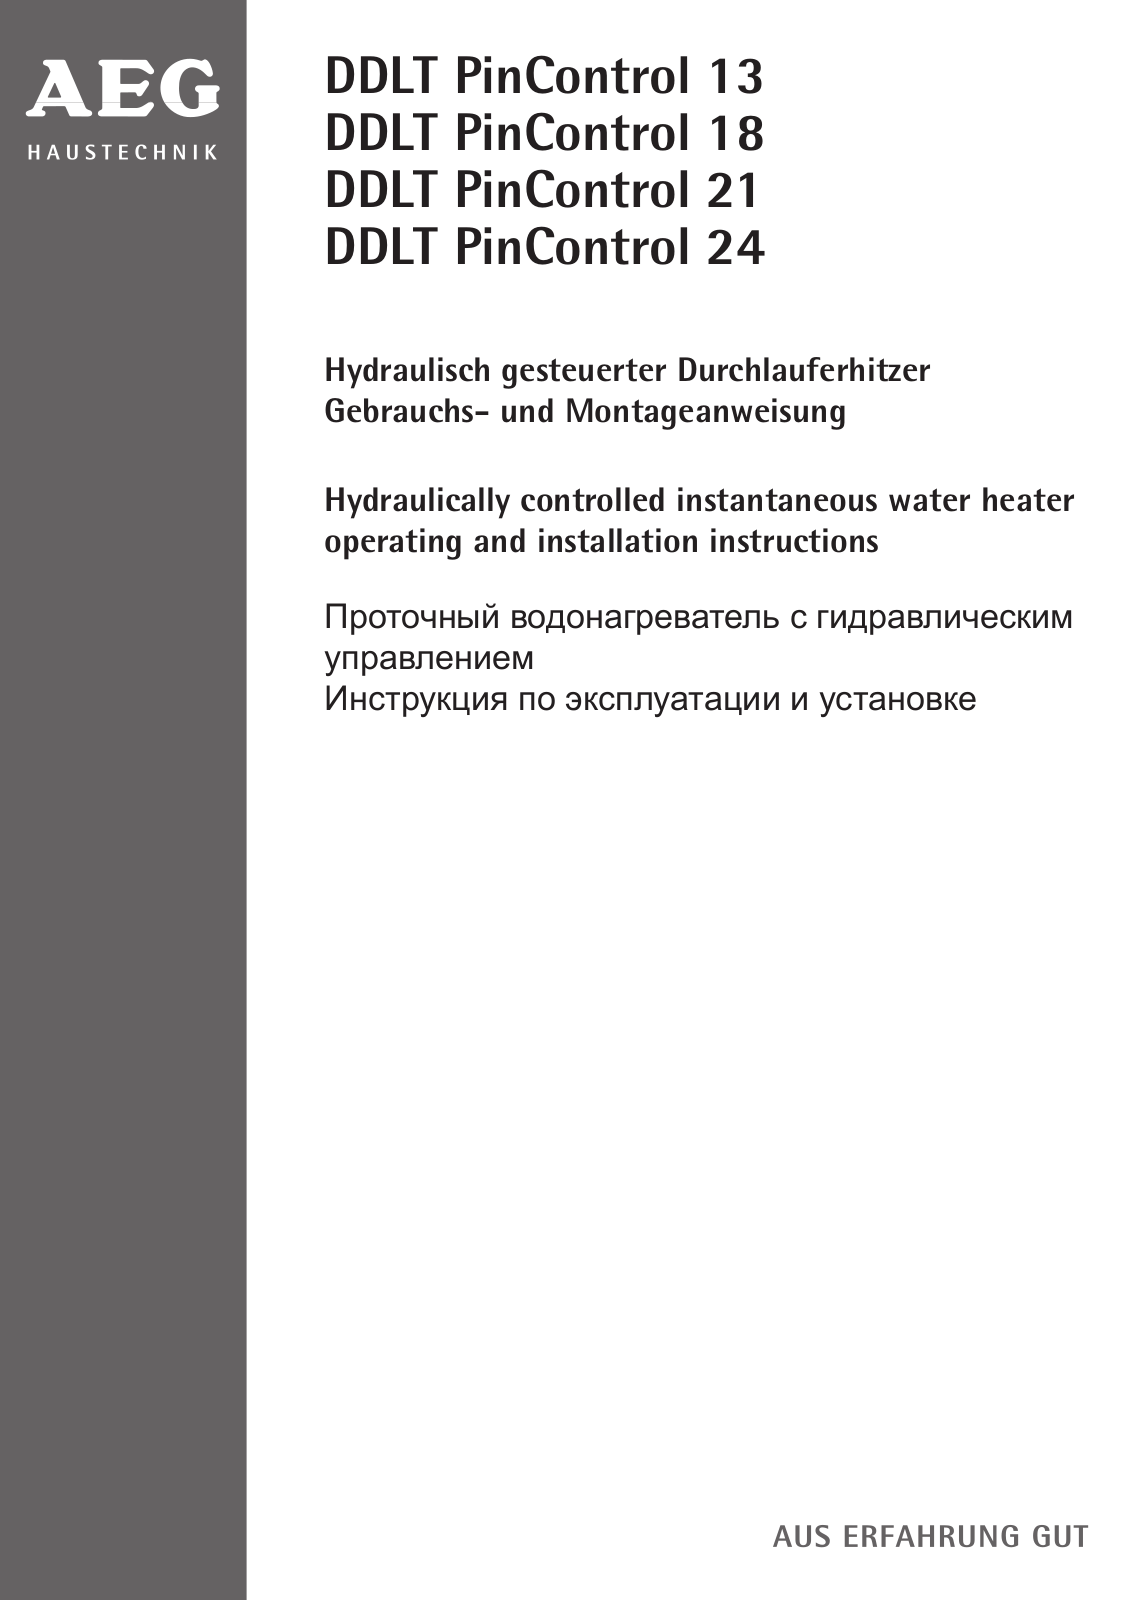 AEG DDLT 13, DDLT 18, DDLT 21, DDLT 24 User Manual